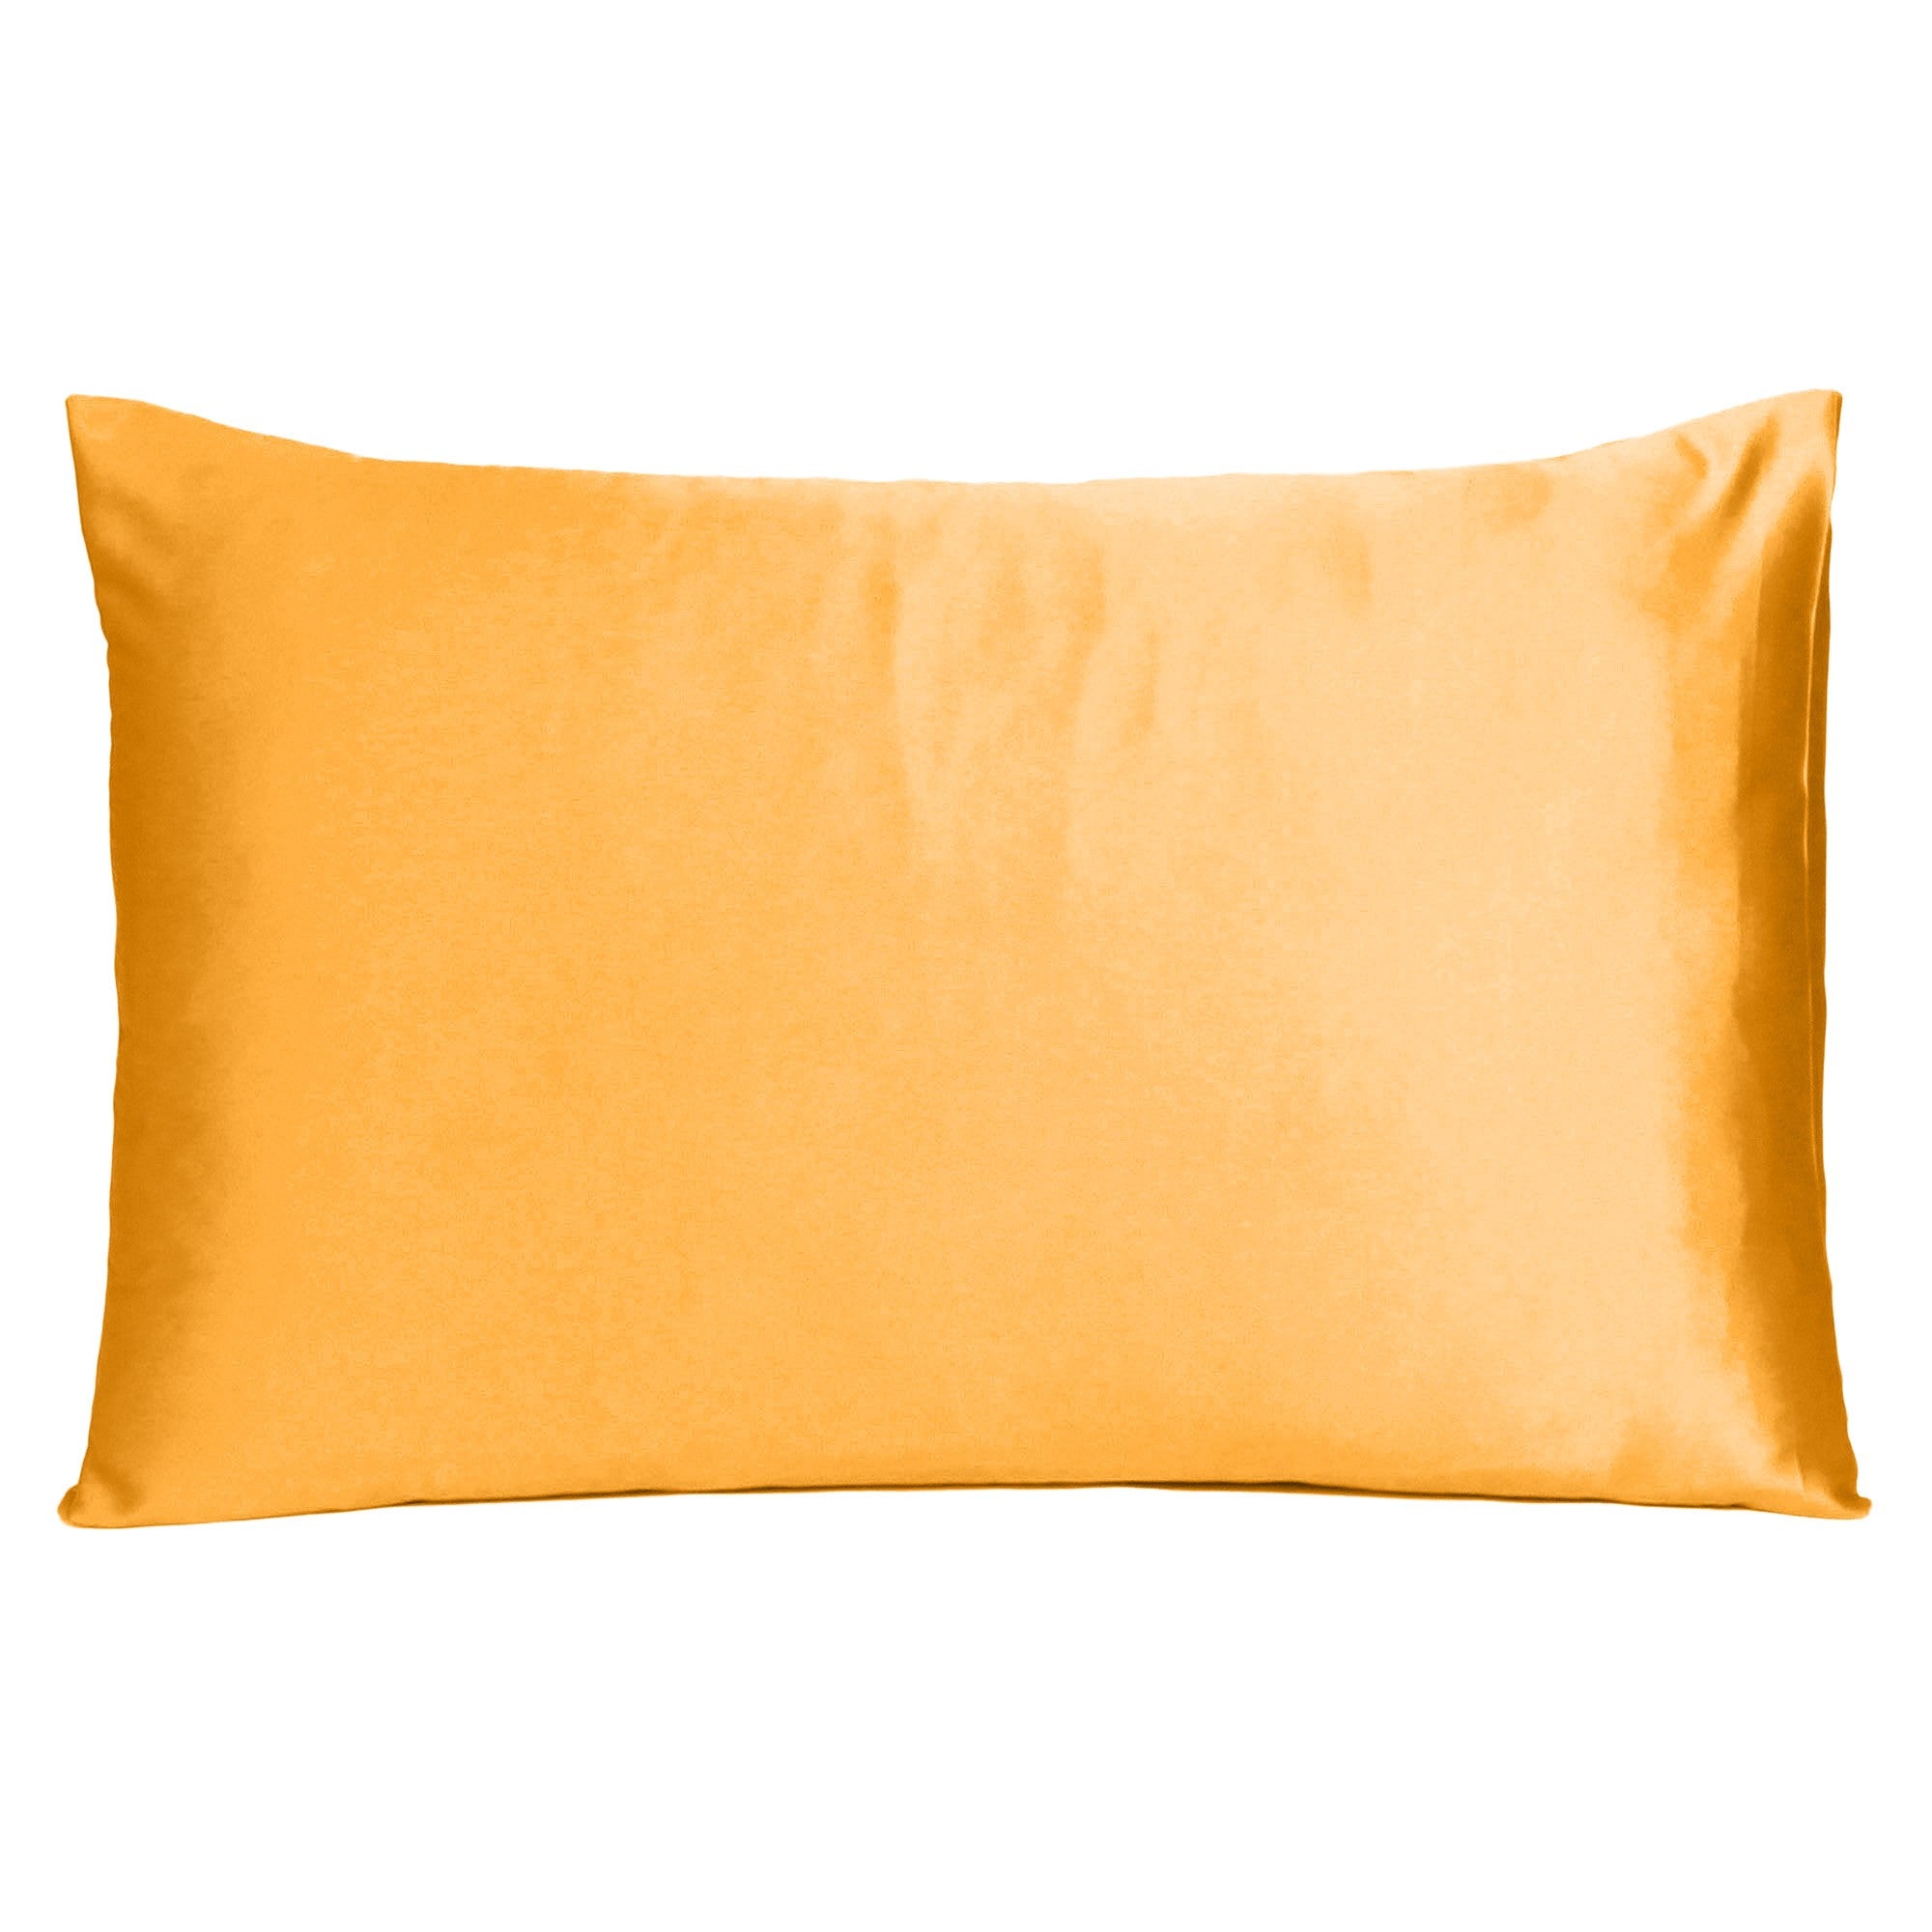 Apricot Dreamy Silky Satin King Size Pillowcase